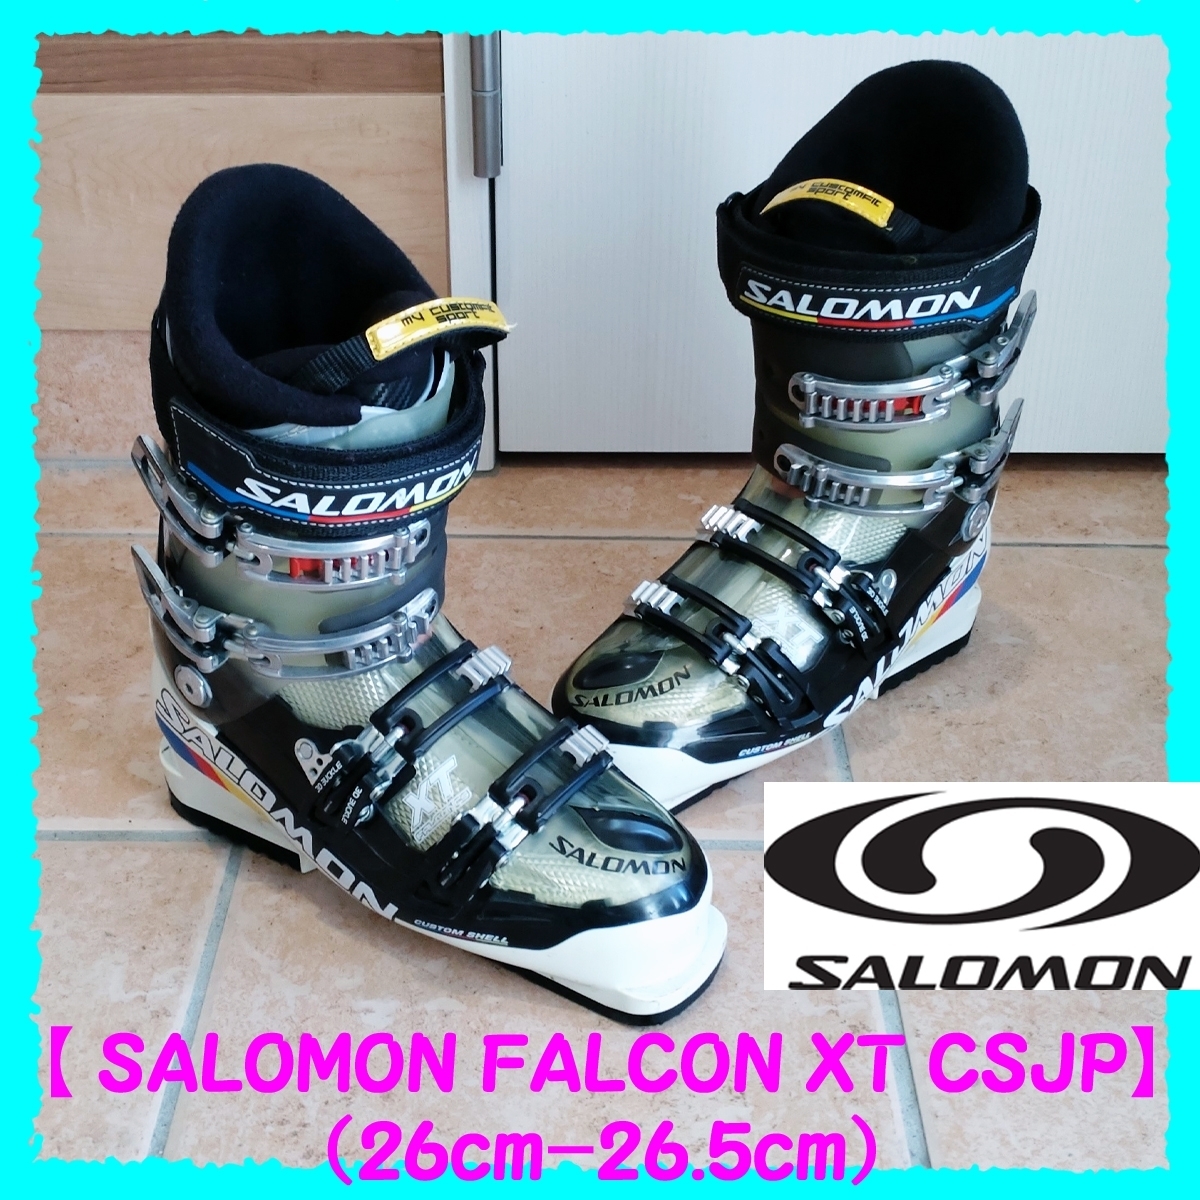 ◇ スキーブーツ Salomon FALCON XT CS 24.0cm スキー 数量限定価格